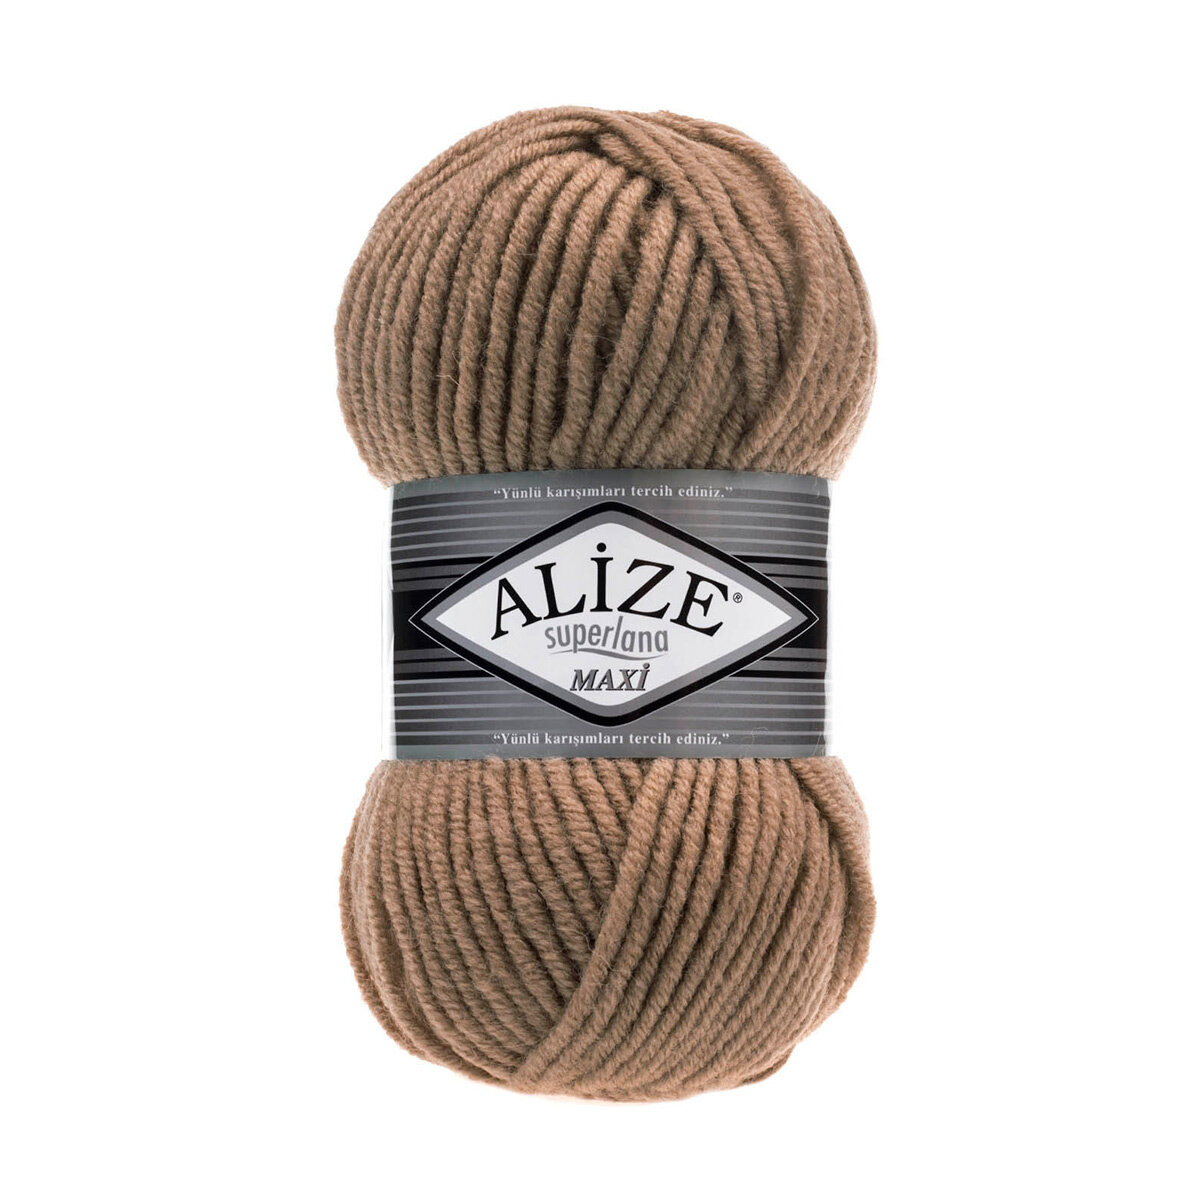 Пряжа для вязания ALIZE 'Superlana maxi', 100г, 100м (75% акрил, 25% шерсть), ТУ (466 тёмно-бежевый), 5 мотков